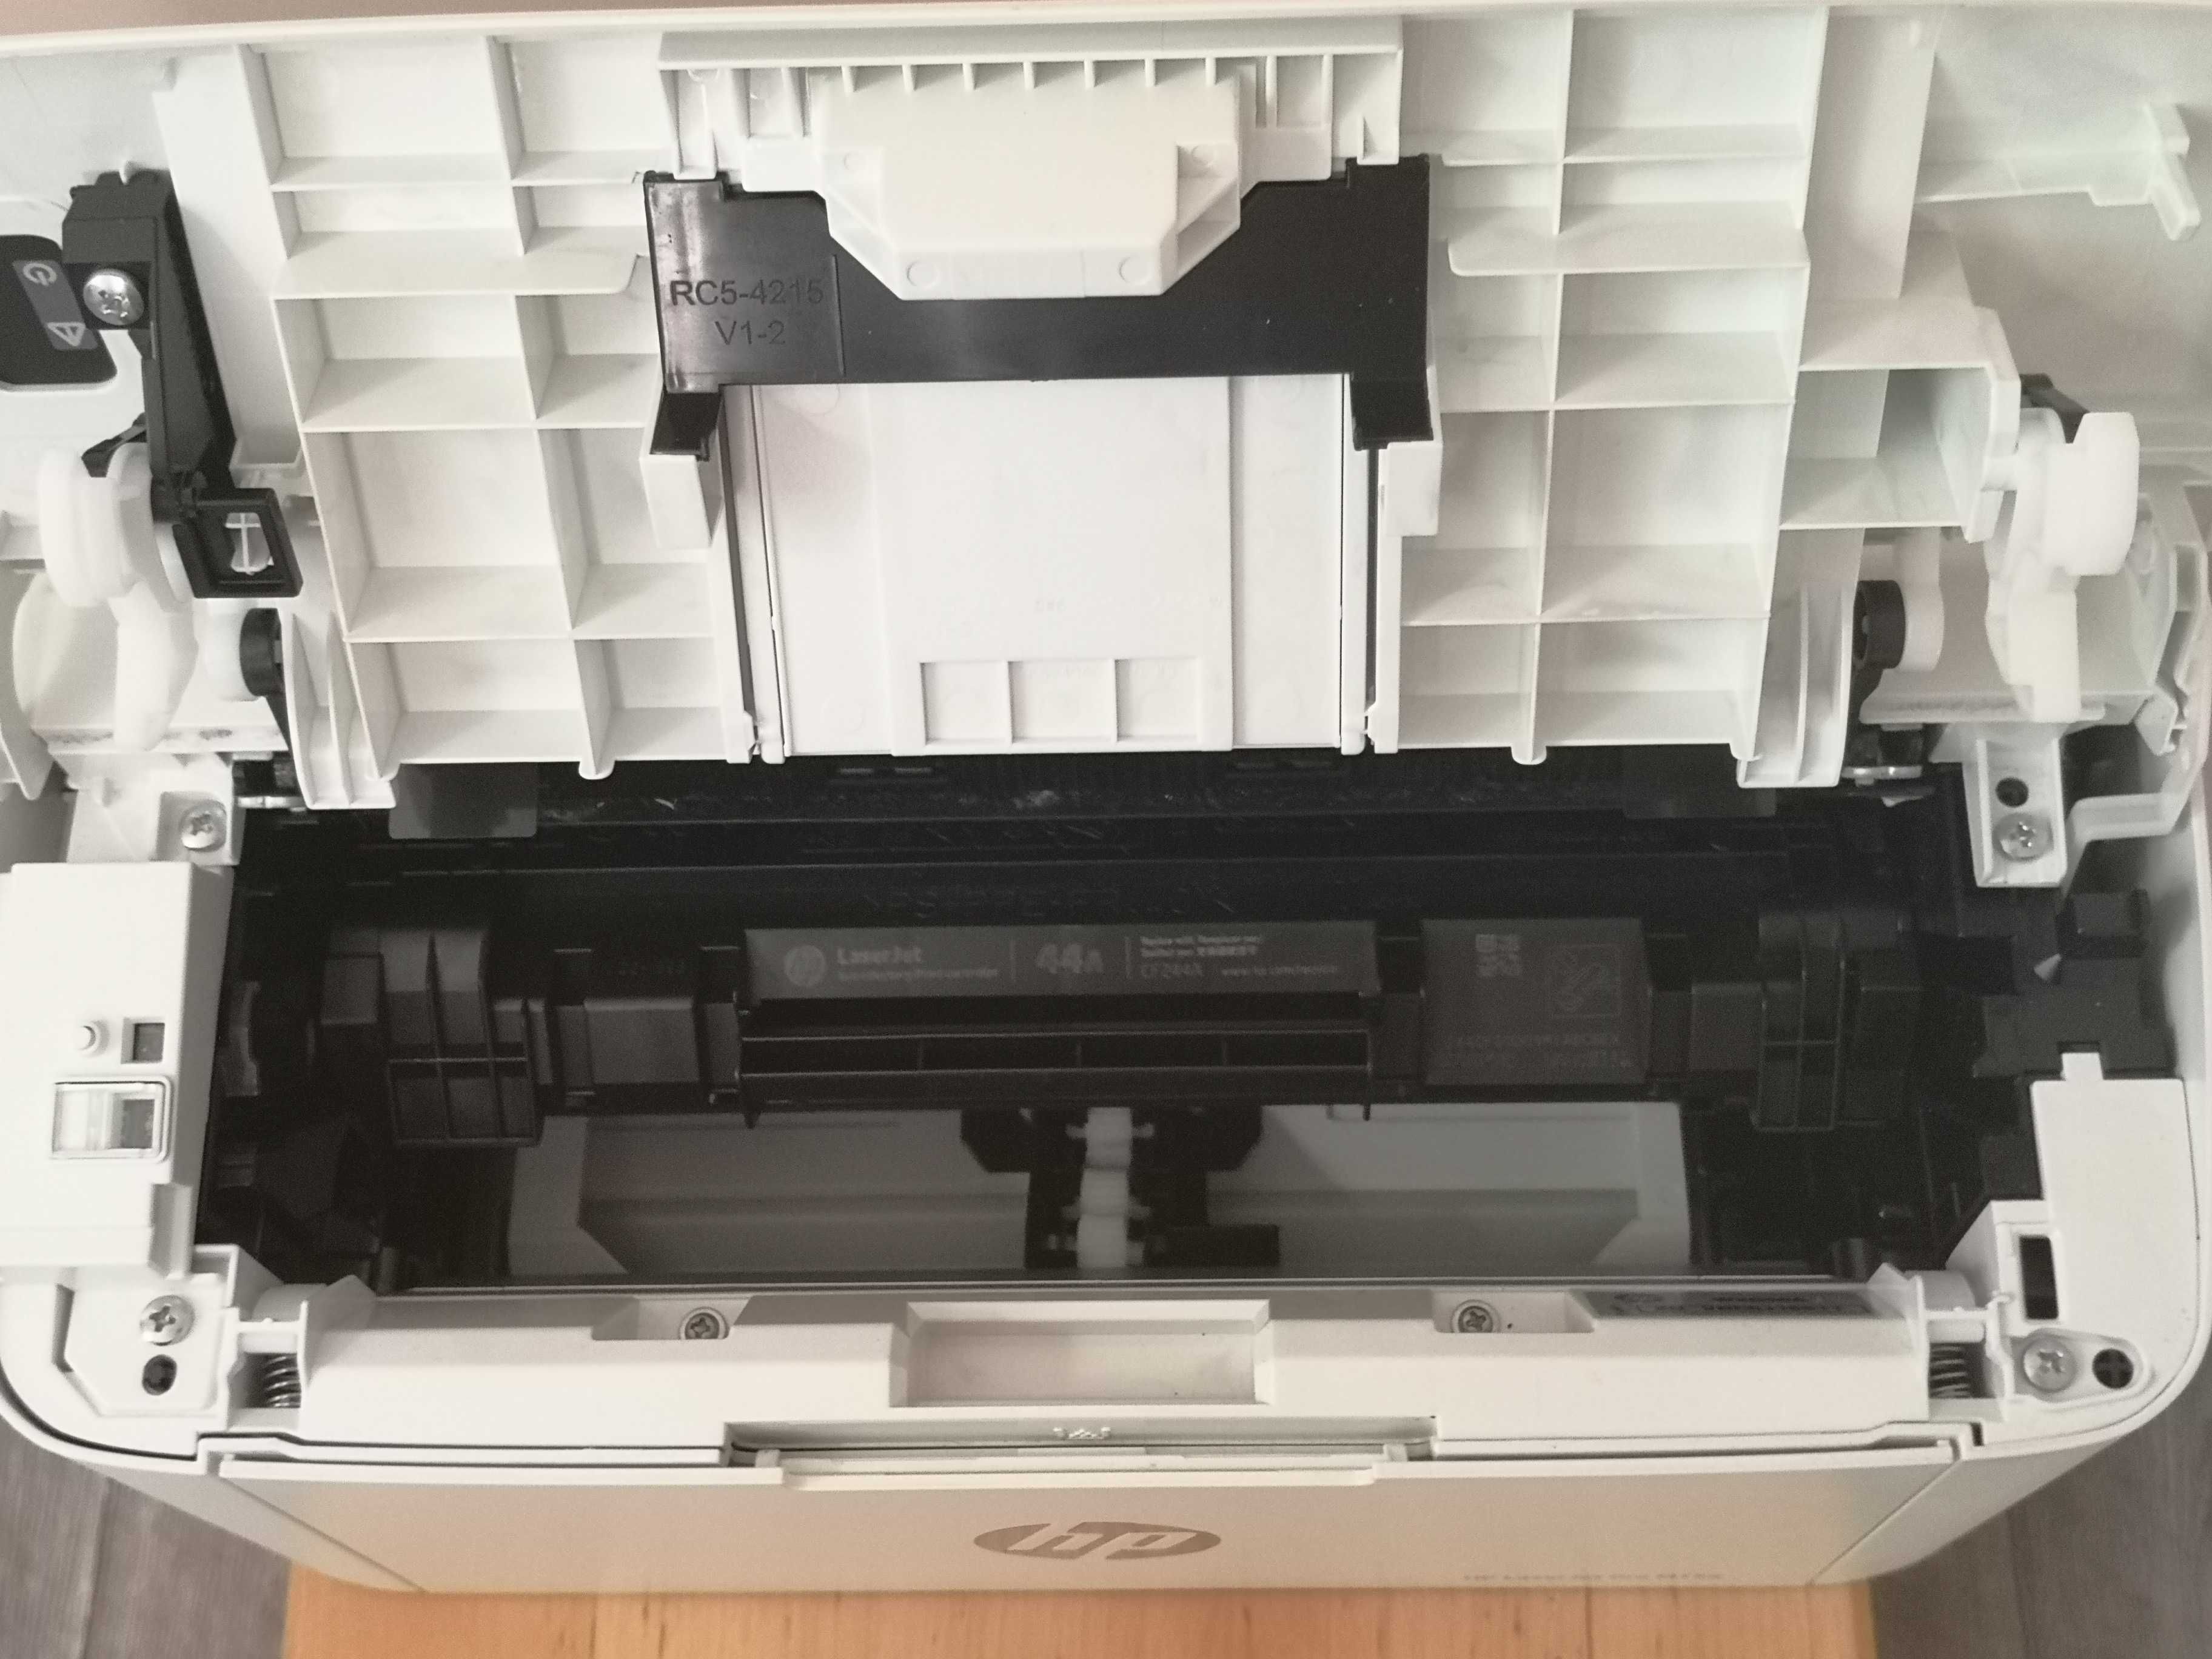 Принтер HP LaserJet Pro M15a Стан нового